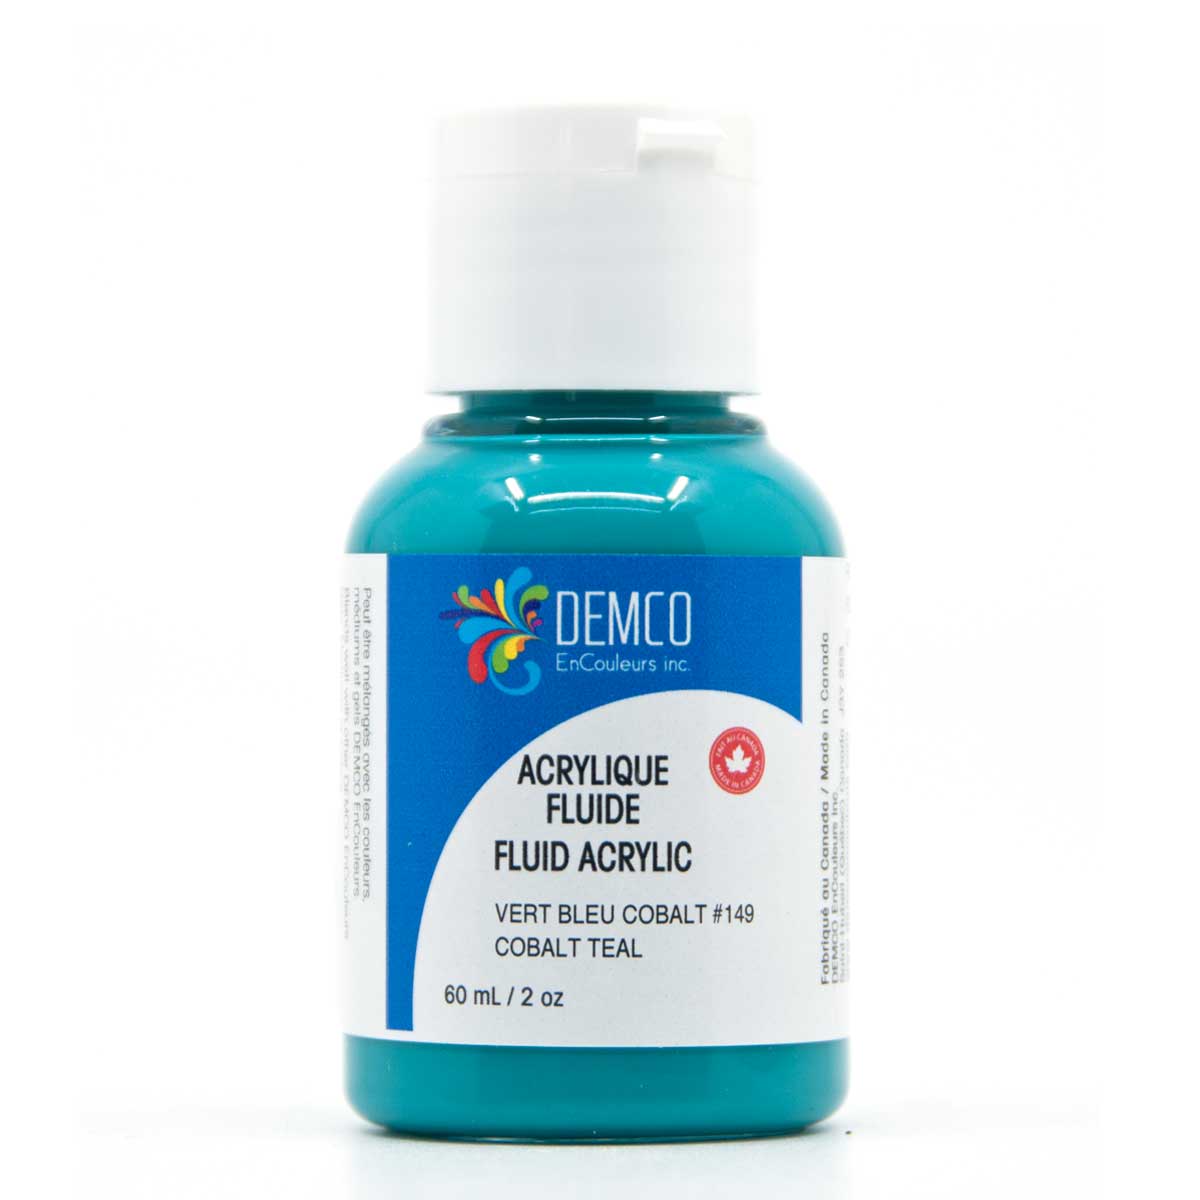 Demco Fluid Acrylic Paint - Cobalt Teal (Hue) 60 ml